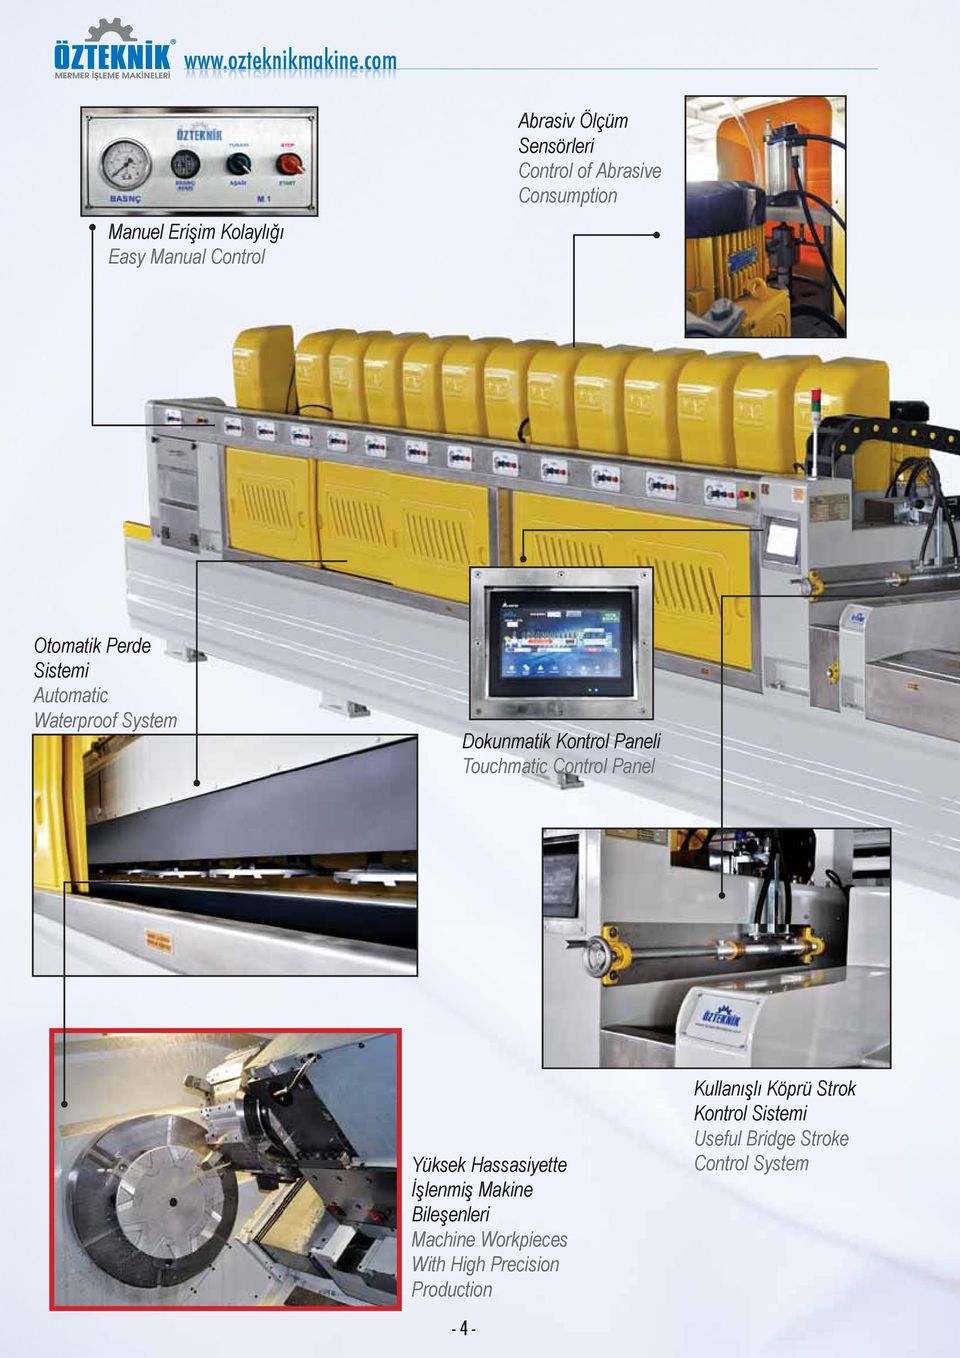 Touchmatic Control Panel Yüksek Hassasiyette İşlenmiş Makine Bileşenleri Machine Workpieces